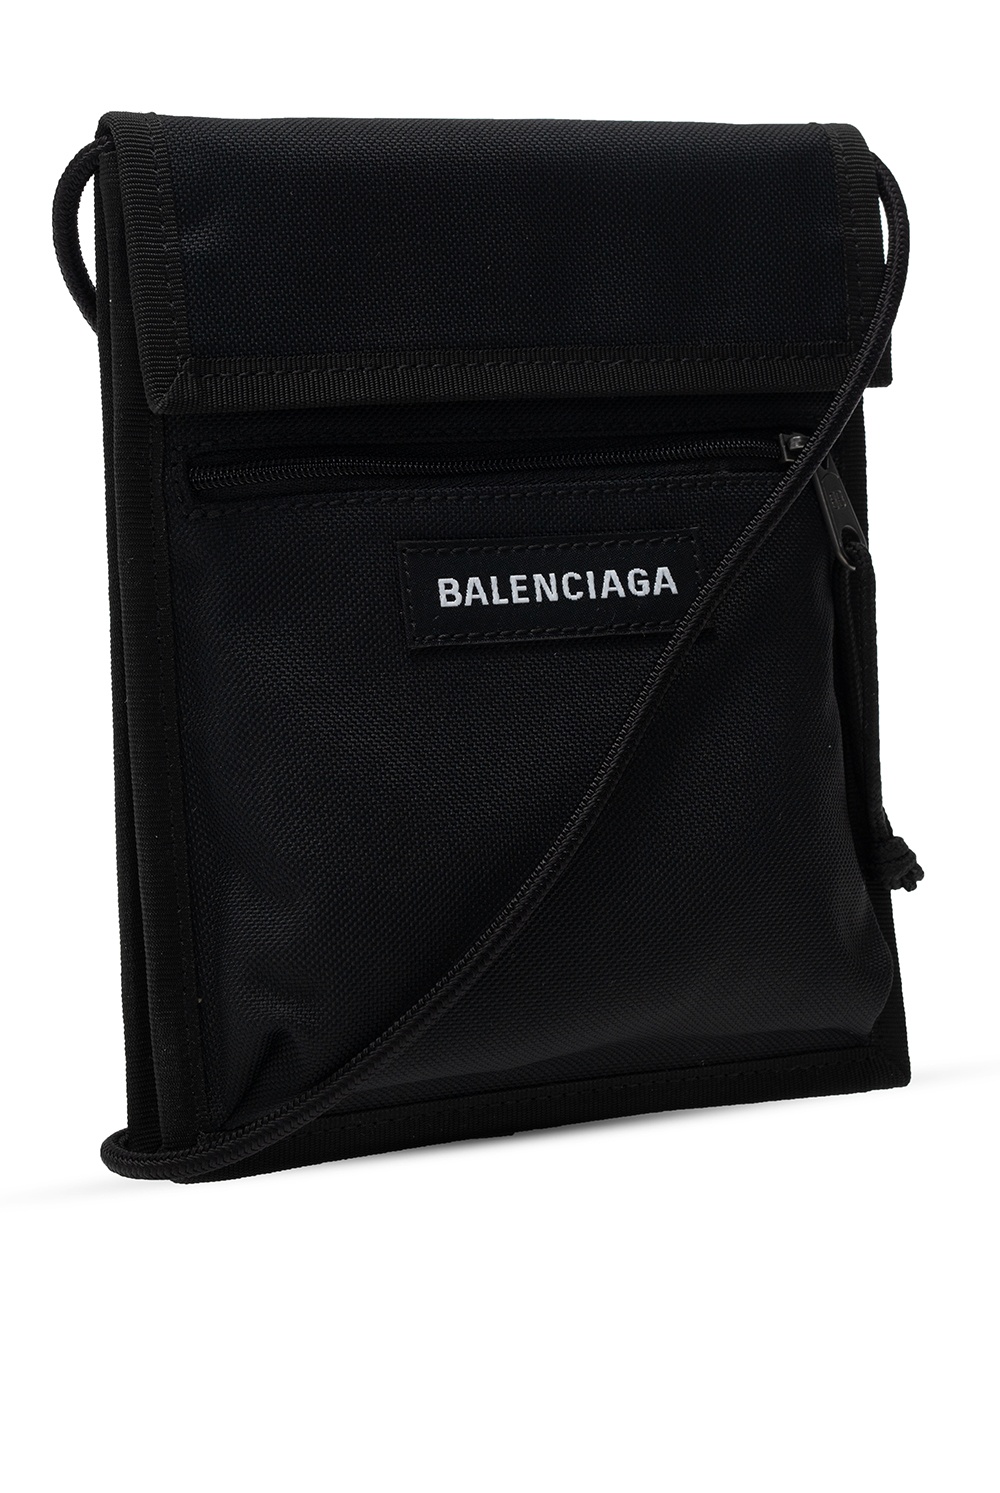 Balenciaga Backpack JENNY FAIRY MJP-J-193-10-01 Black